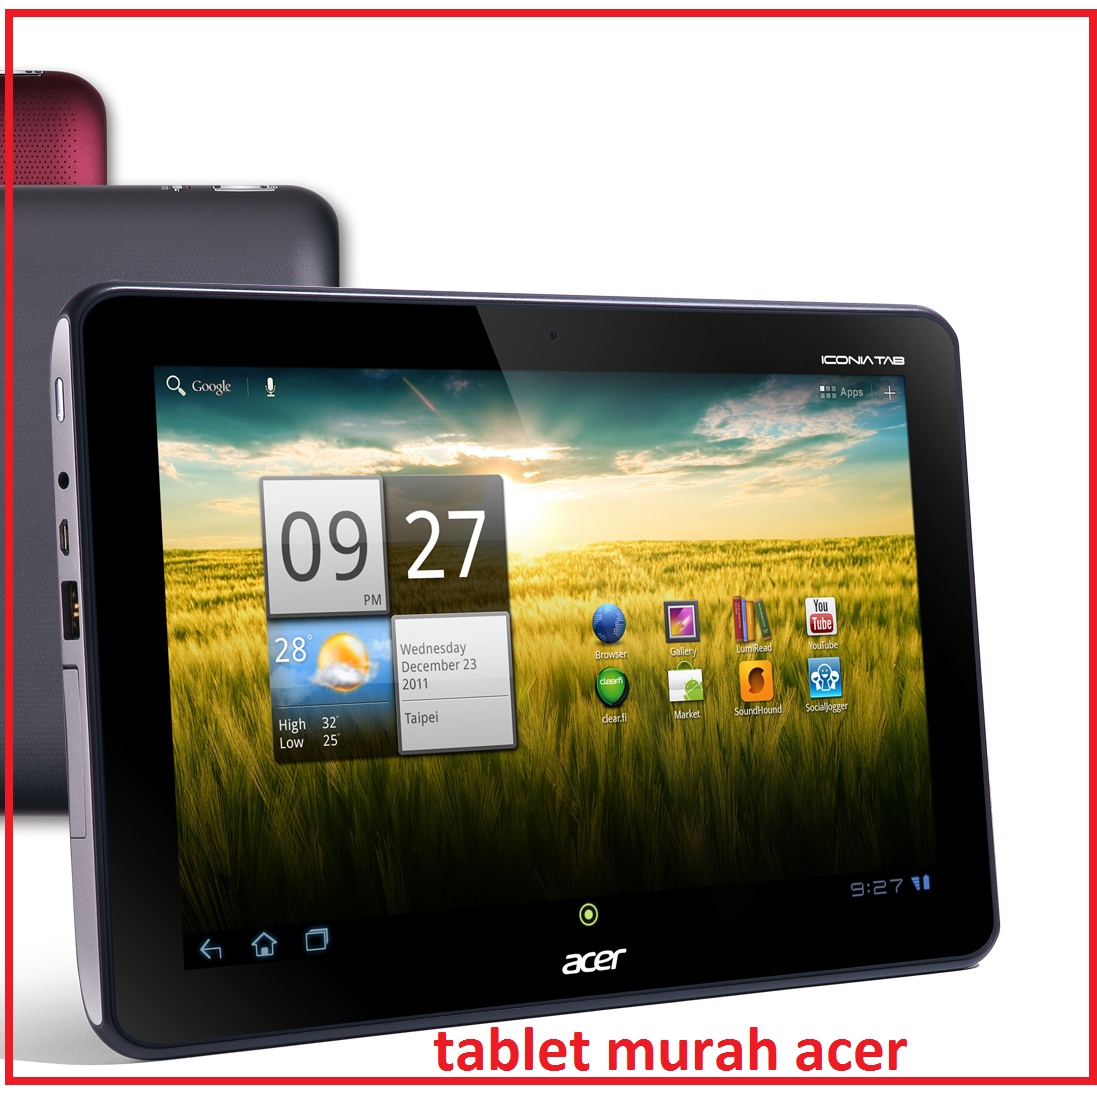  Tablet  Paling Murah  1 Jutaan dari Acer A200 Apa 